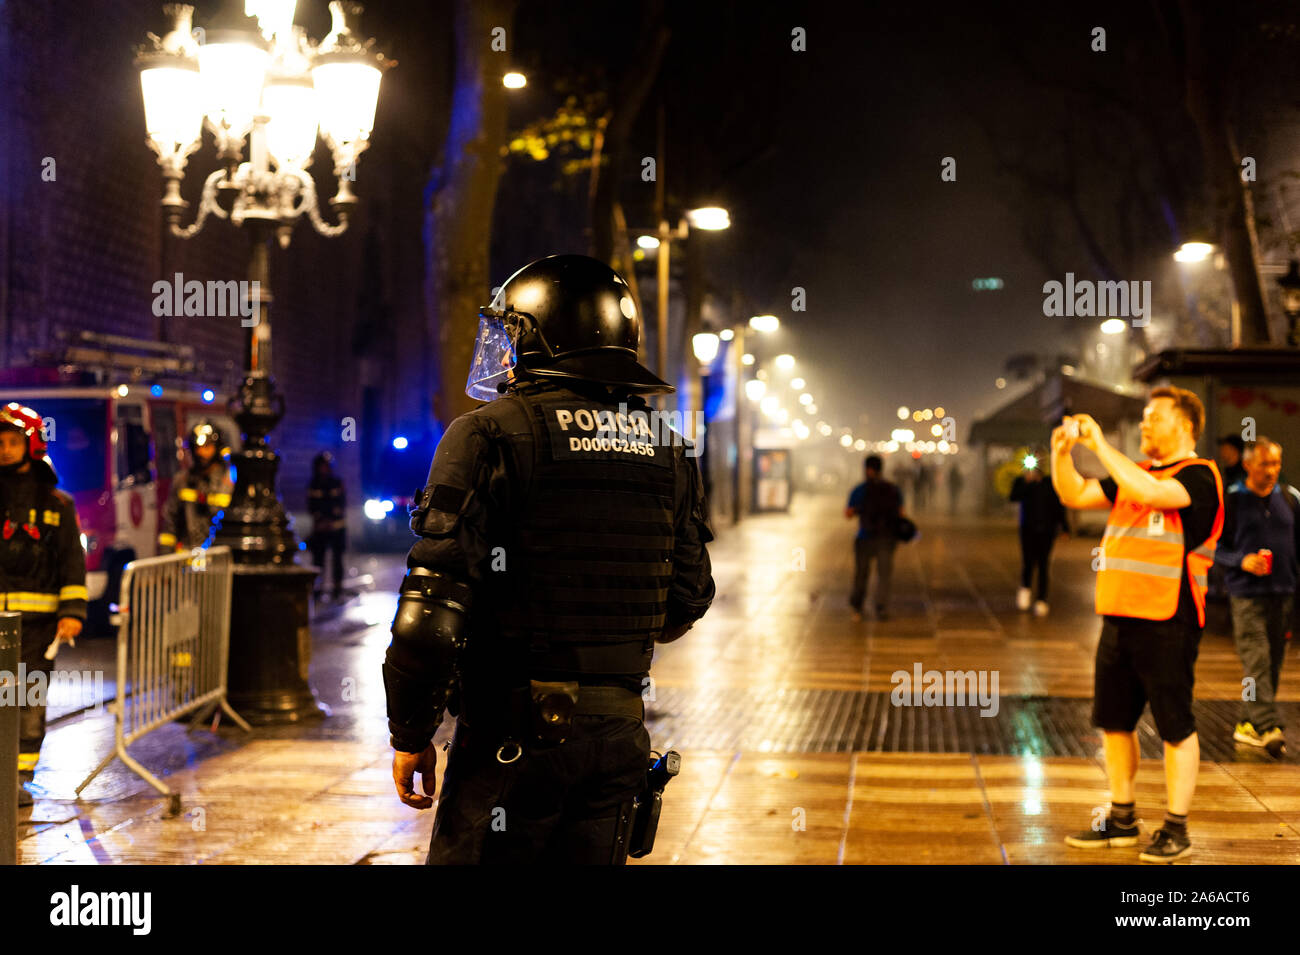 Barcellona, Spagna - 18 ottobre 2019: mossos d'esquadra in via ramblas polizia catalana con pistole di confrontarsi con i dimostranti di notte durante scontri Foto Stock